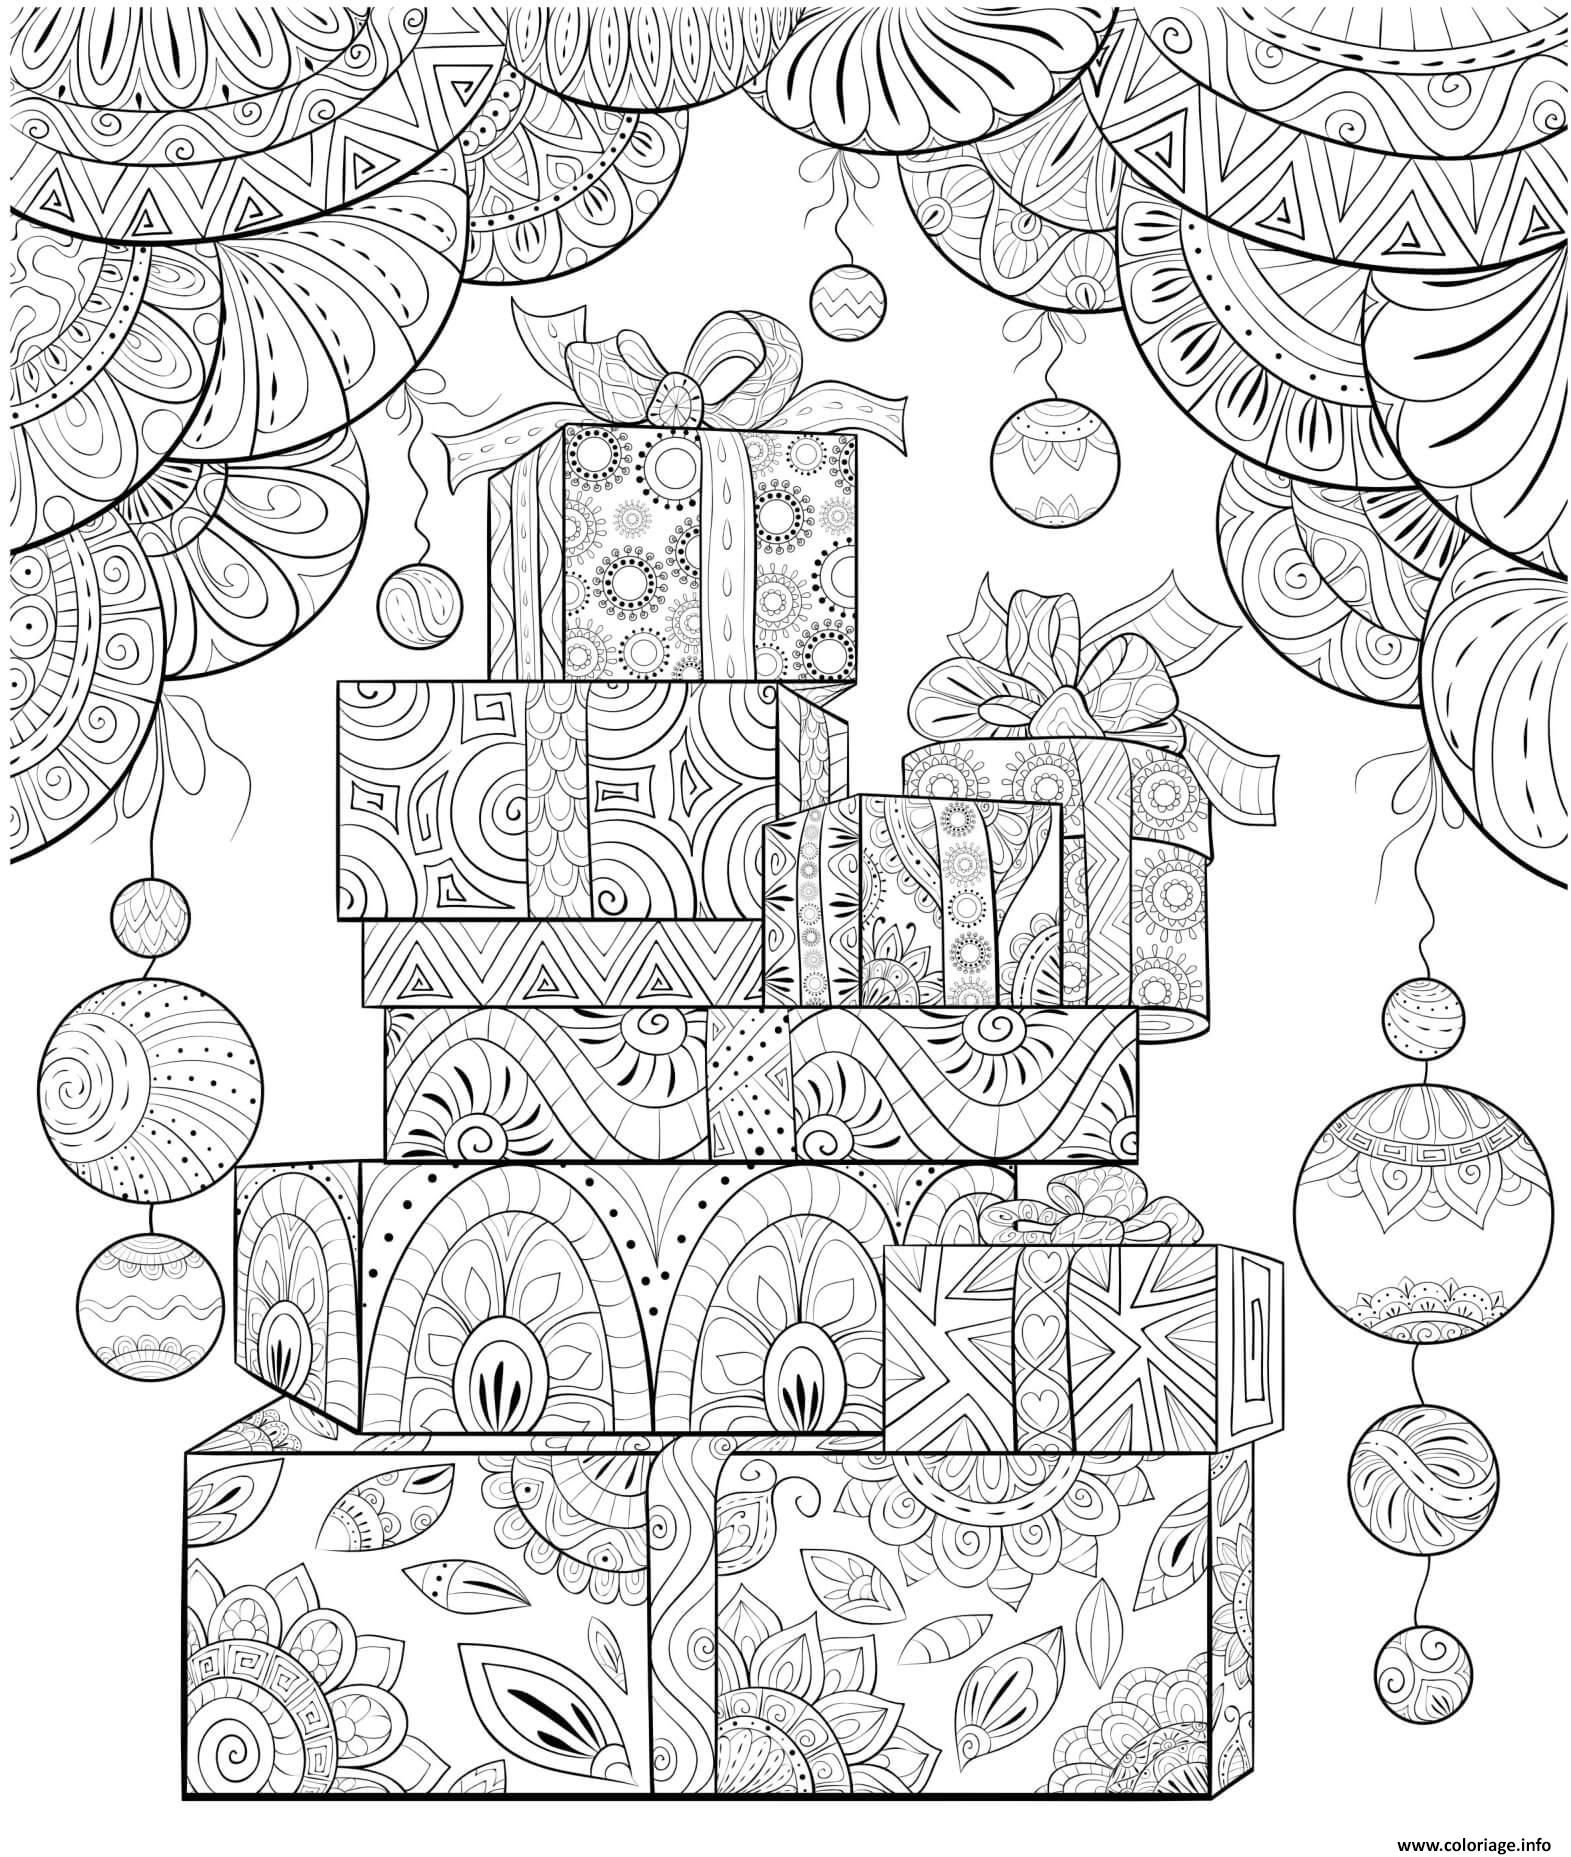 Coloriage Cadeaux De Noel Mandala Anti Stress Dessin Noel Adulte À Imprimer intérieur Coloriage A Imprimer De Noel Gratuit 